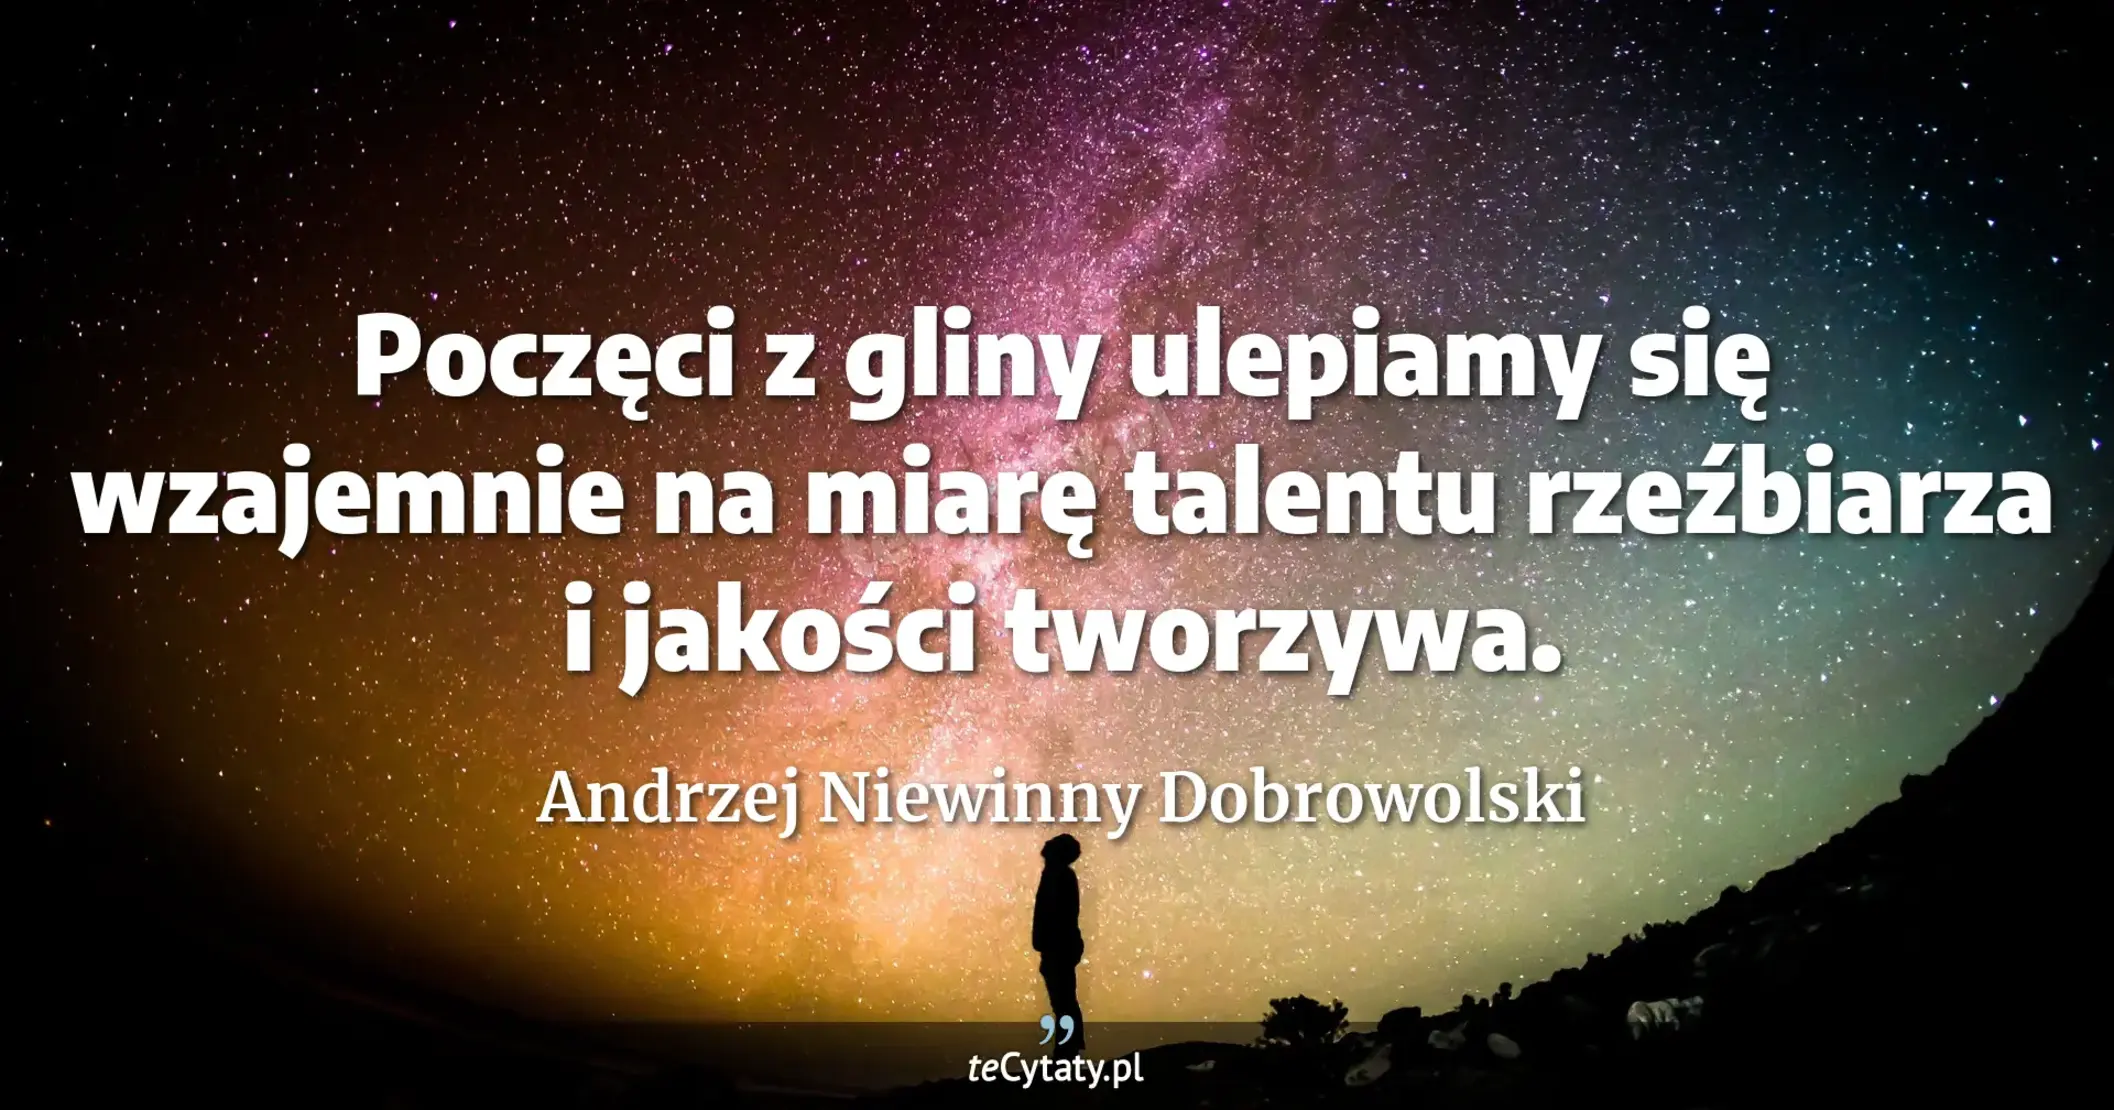 Poczęci z gliny ulepiamy się wzajemnie na miarę talentu rzeźbiarza i jakości tworzywa. - Andrzej Niewinny Dobrowolski